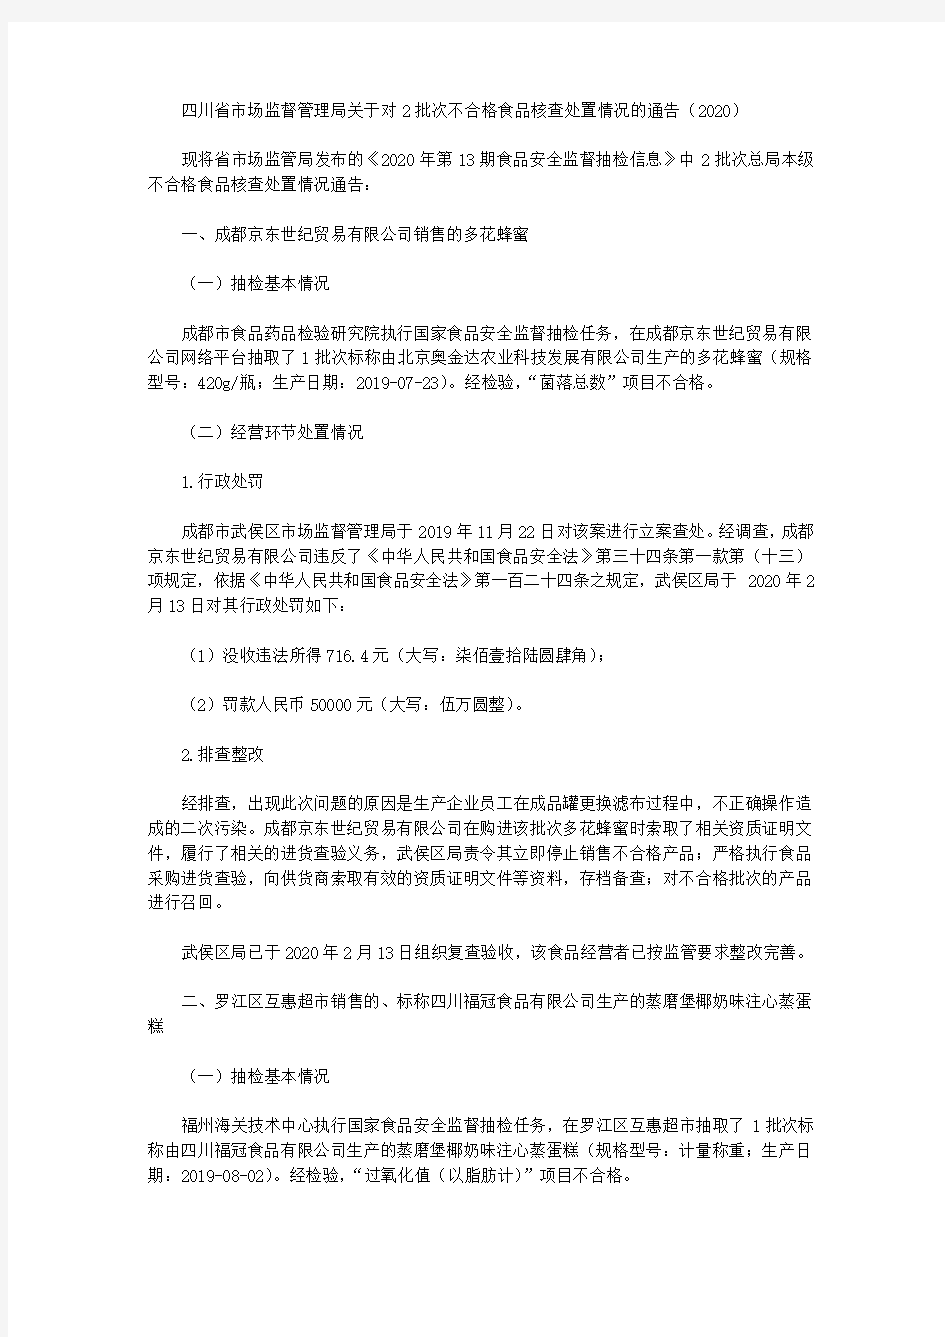 四川省市场监督管理局关于对2批次不合格食品核查处置情况的通告(2020)